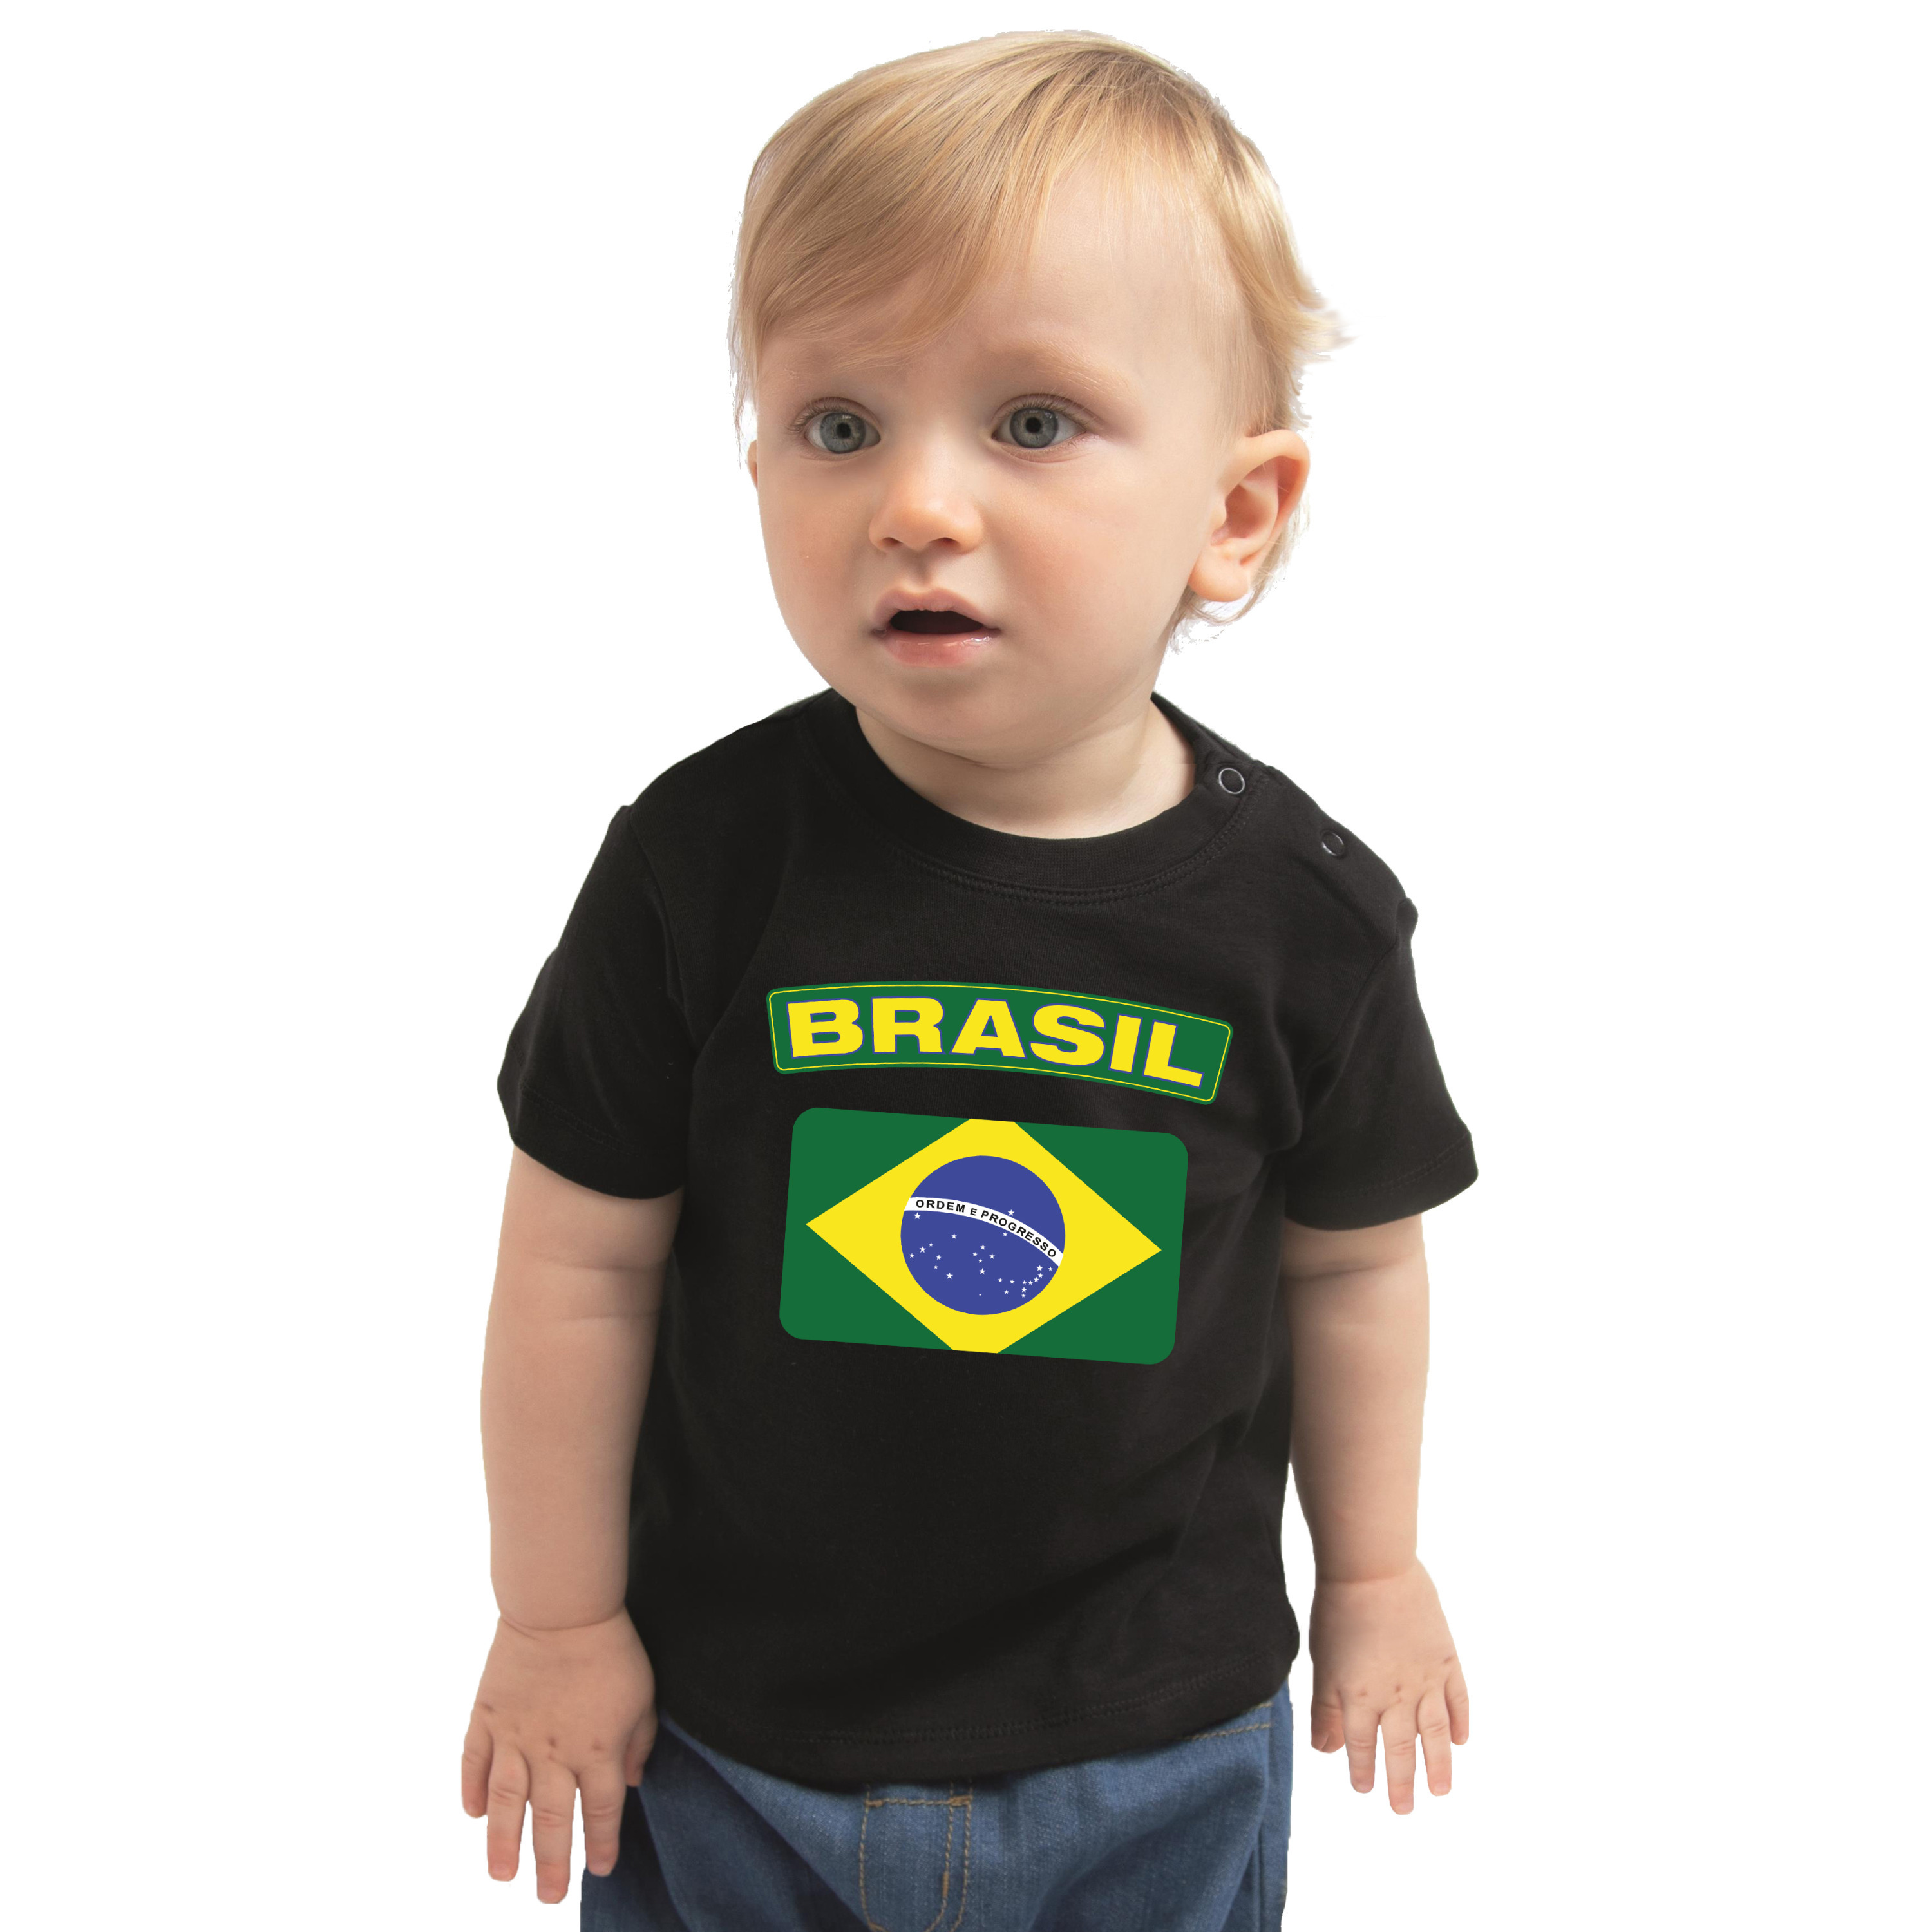 Brasil t-shirt met vlag Brazilie zwart voor babys